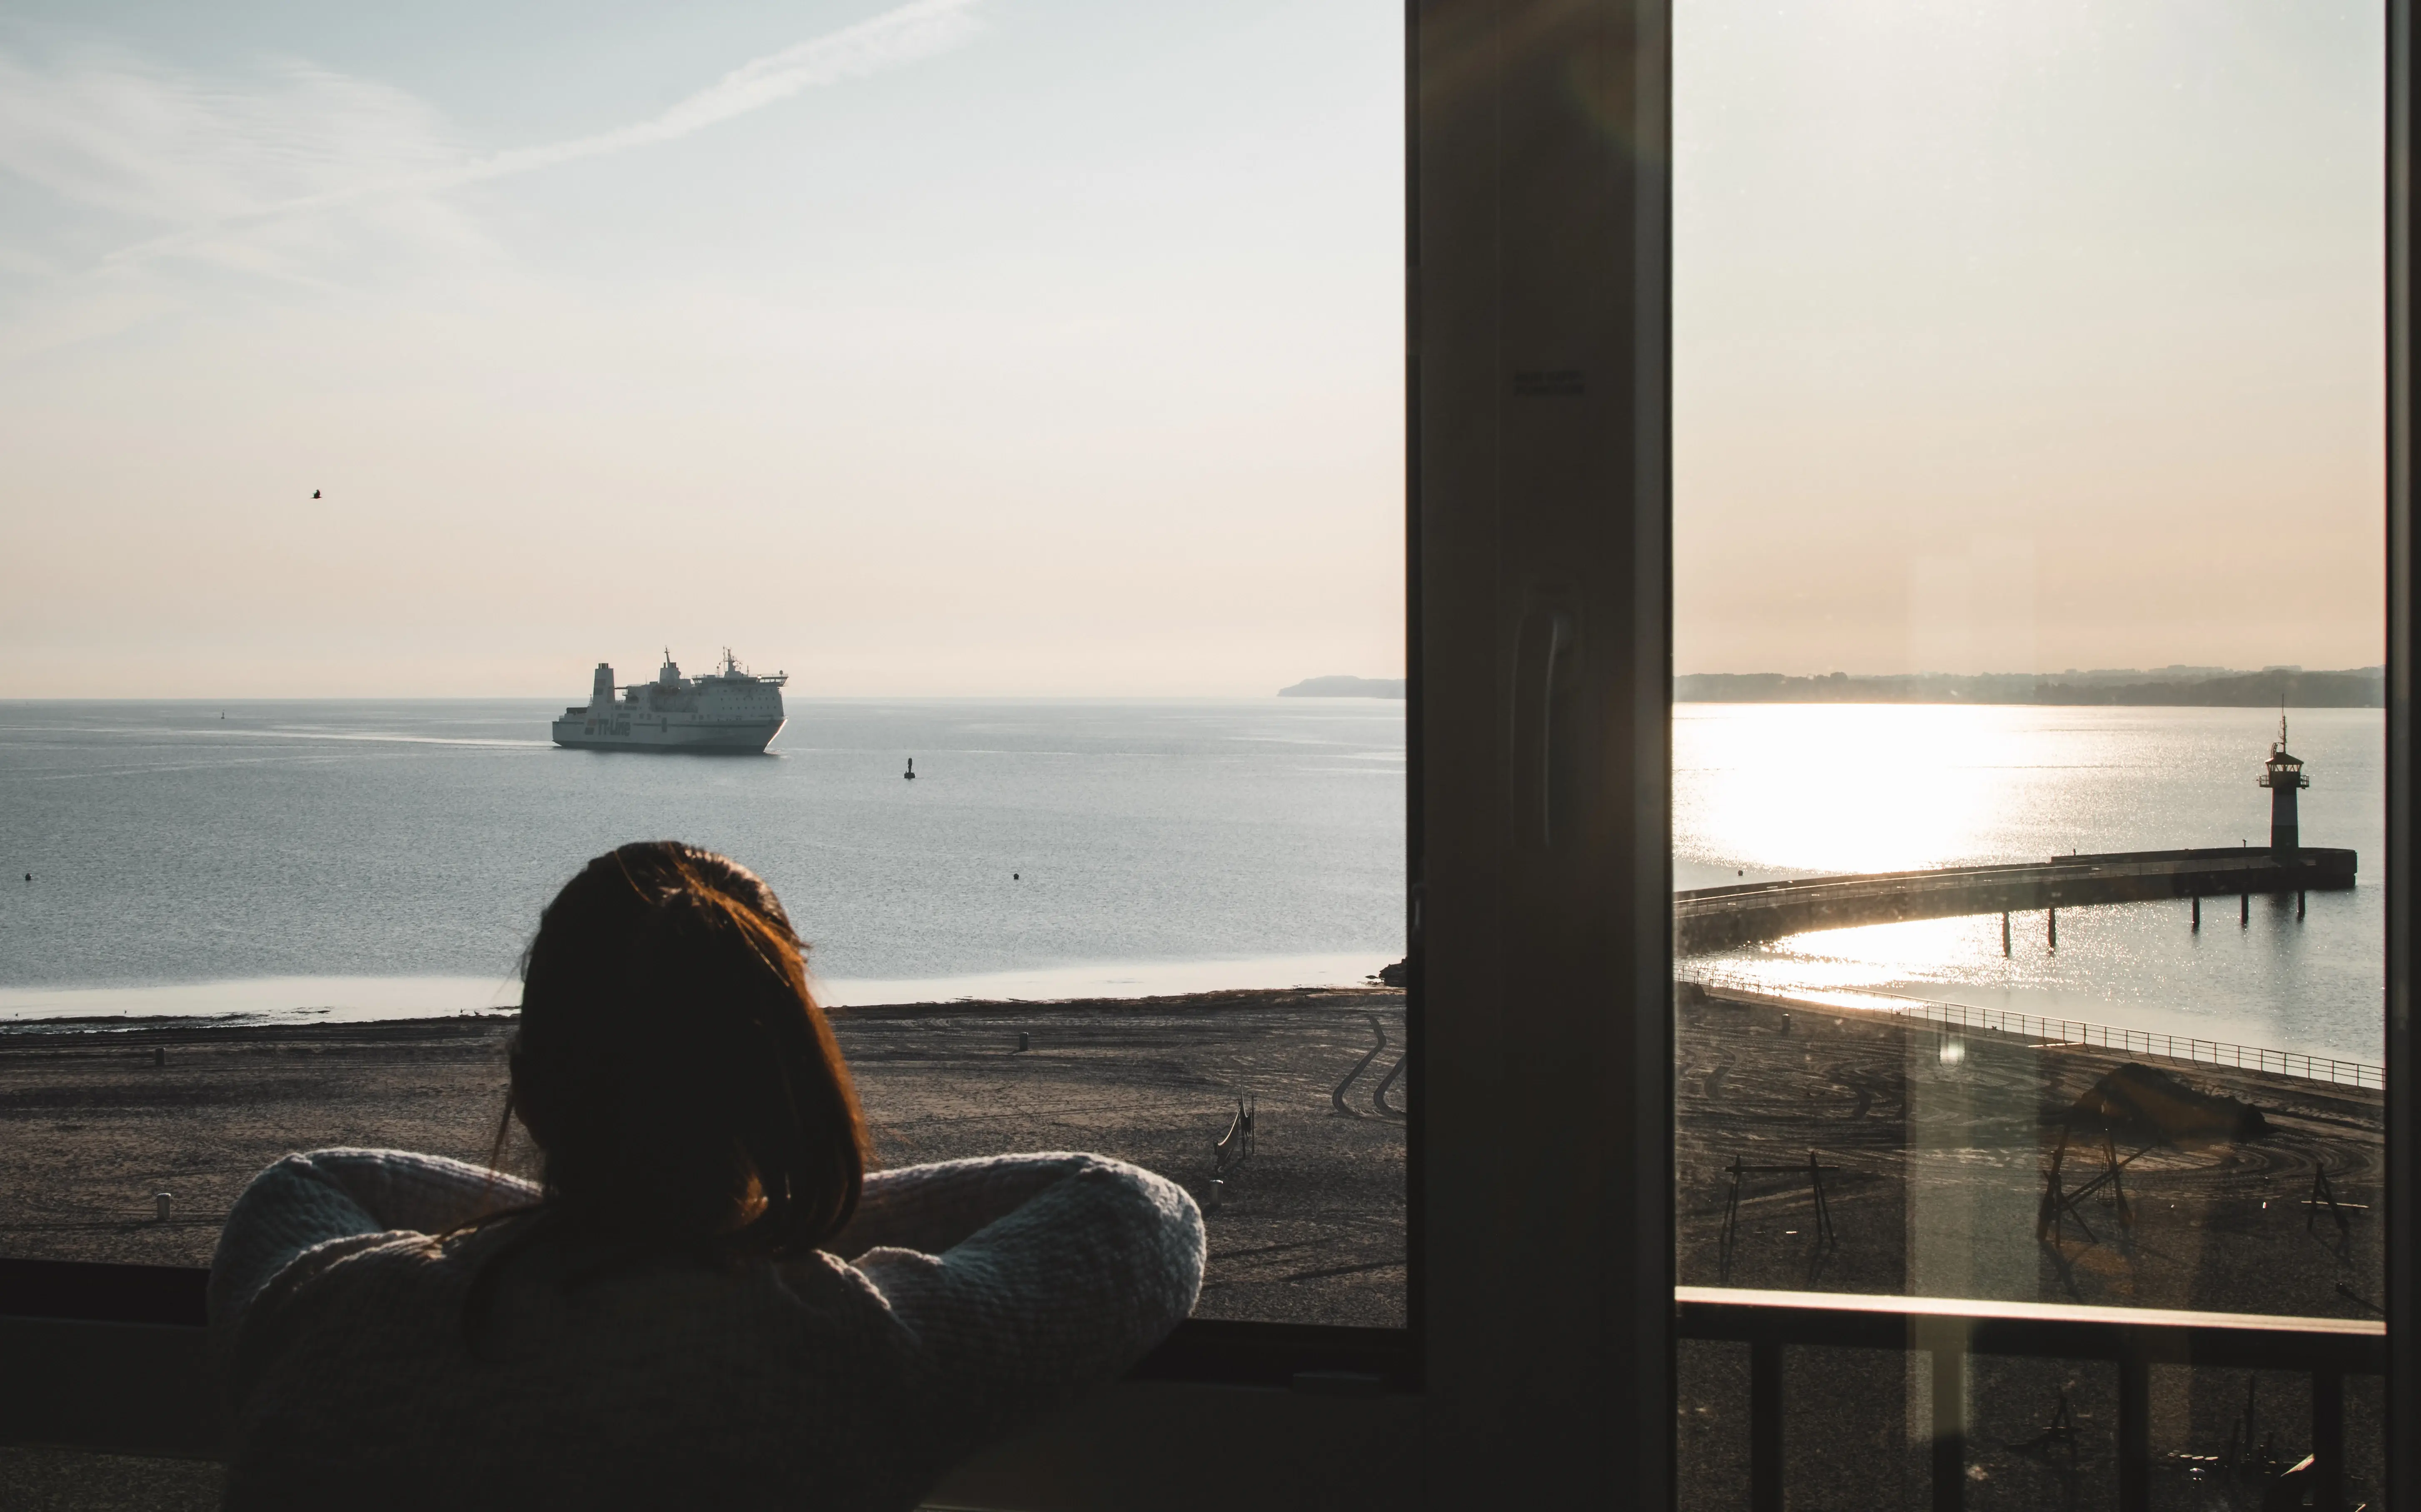 Frau blickt aus dem Fenster auf ein Schiff im Wasser